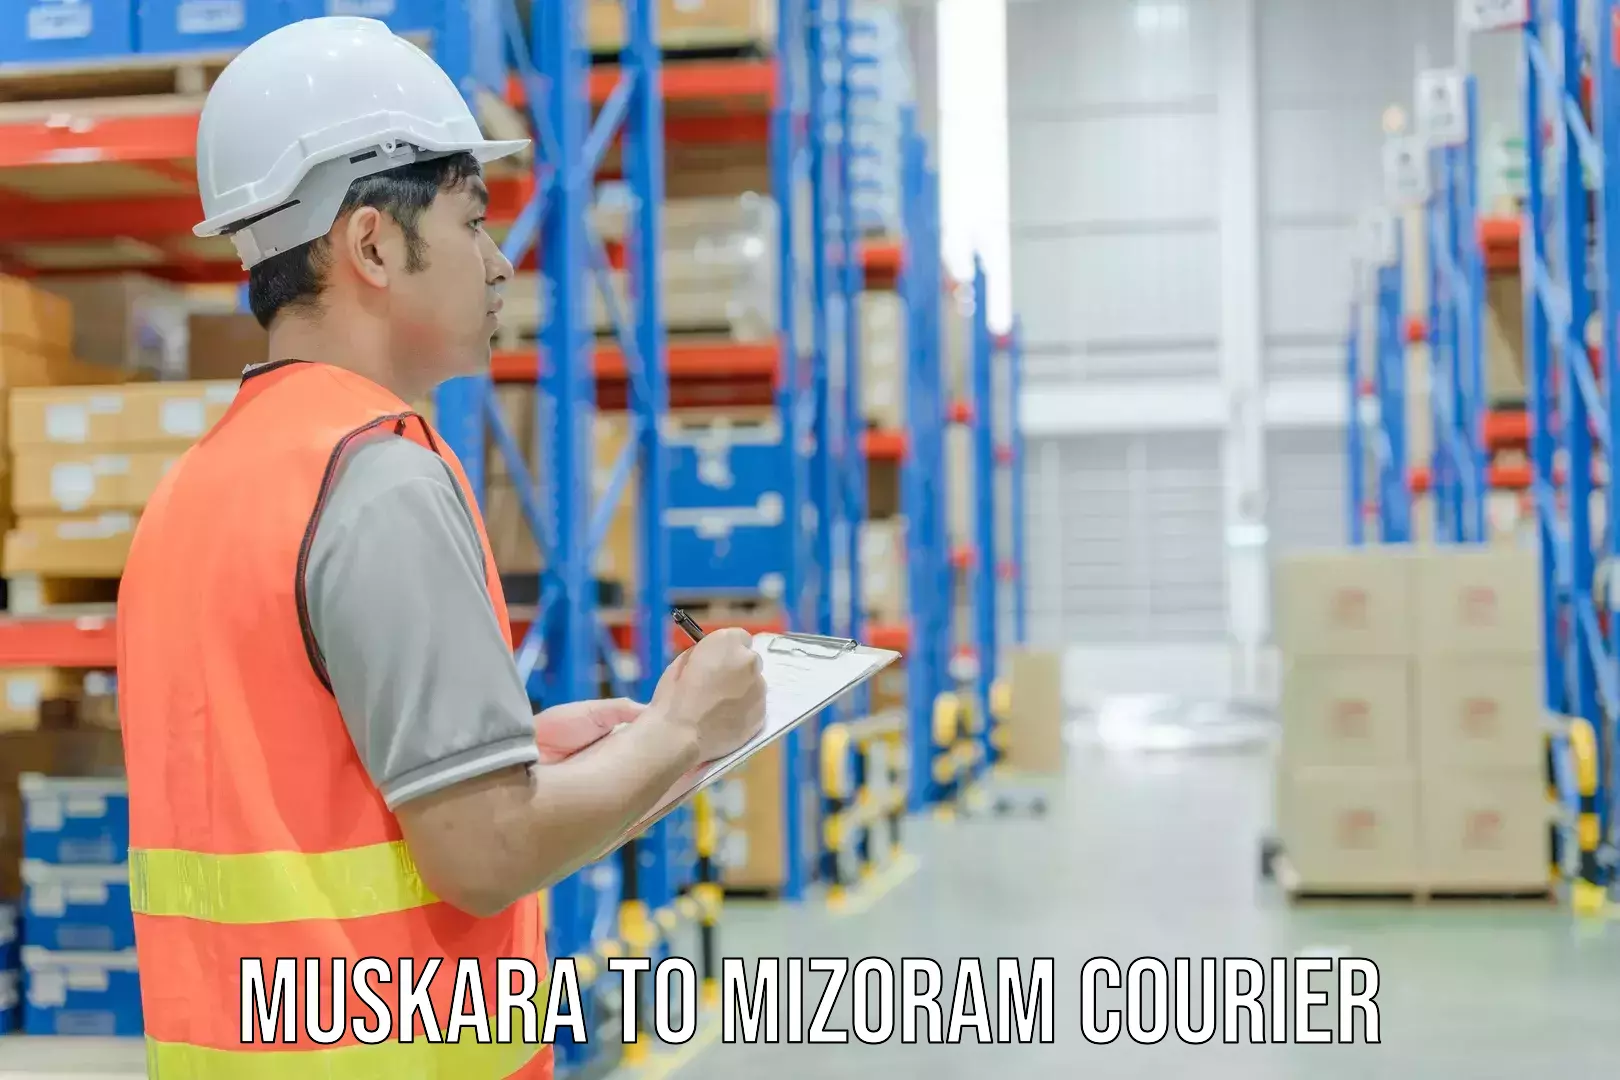 Express courier facilities Muskara to Mizoram